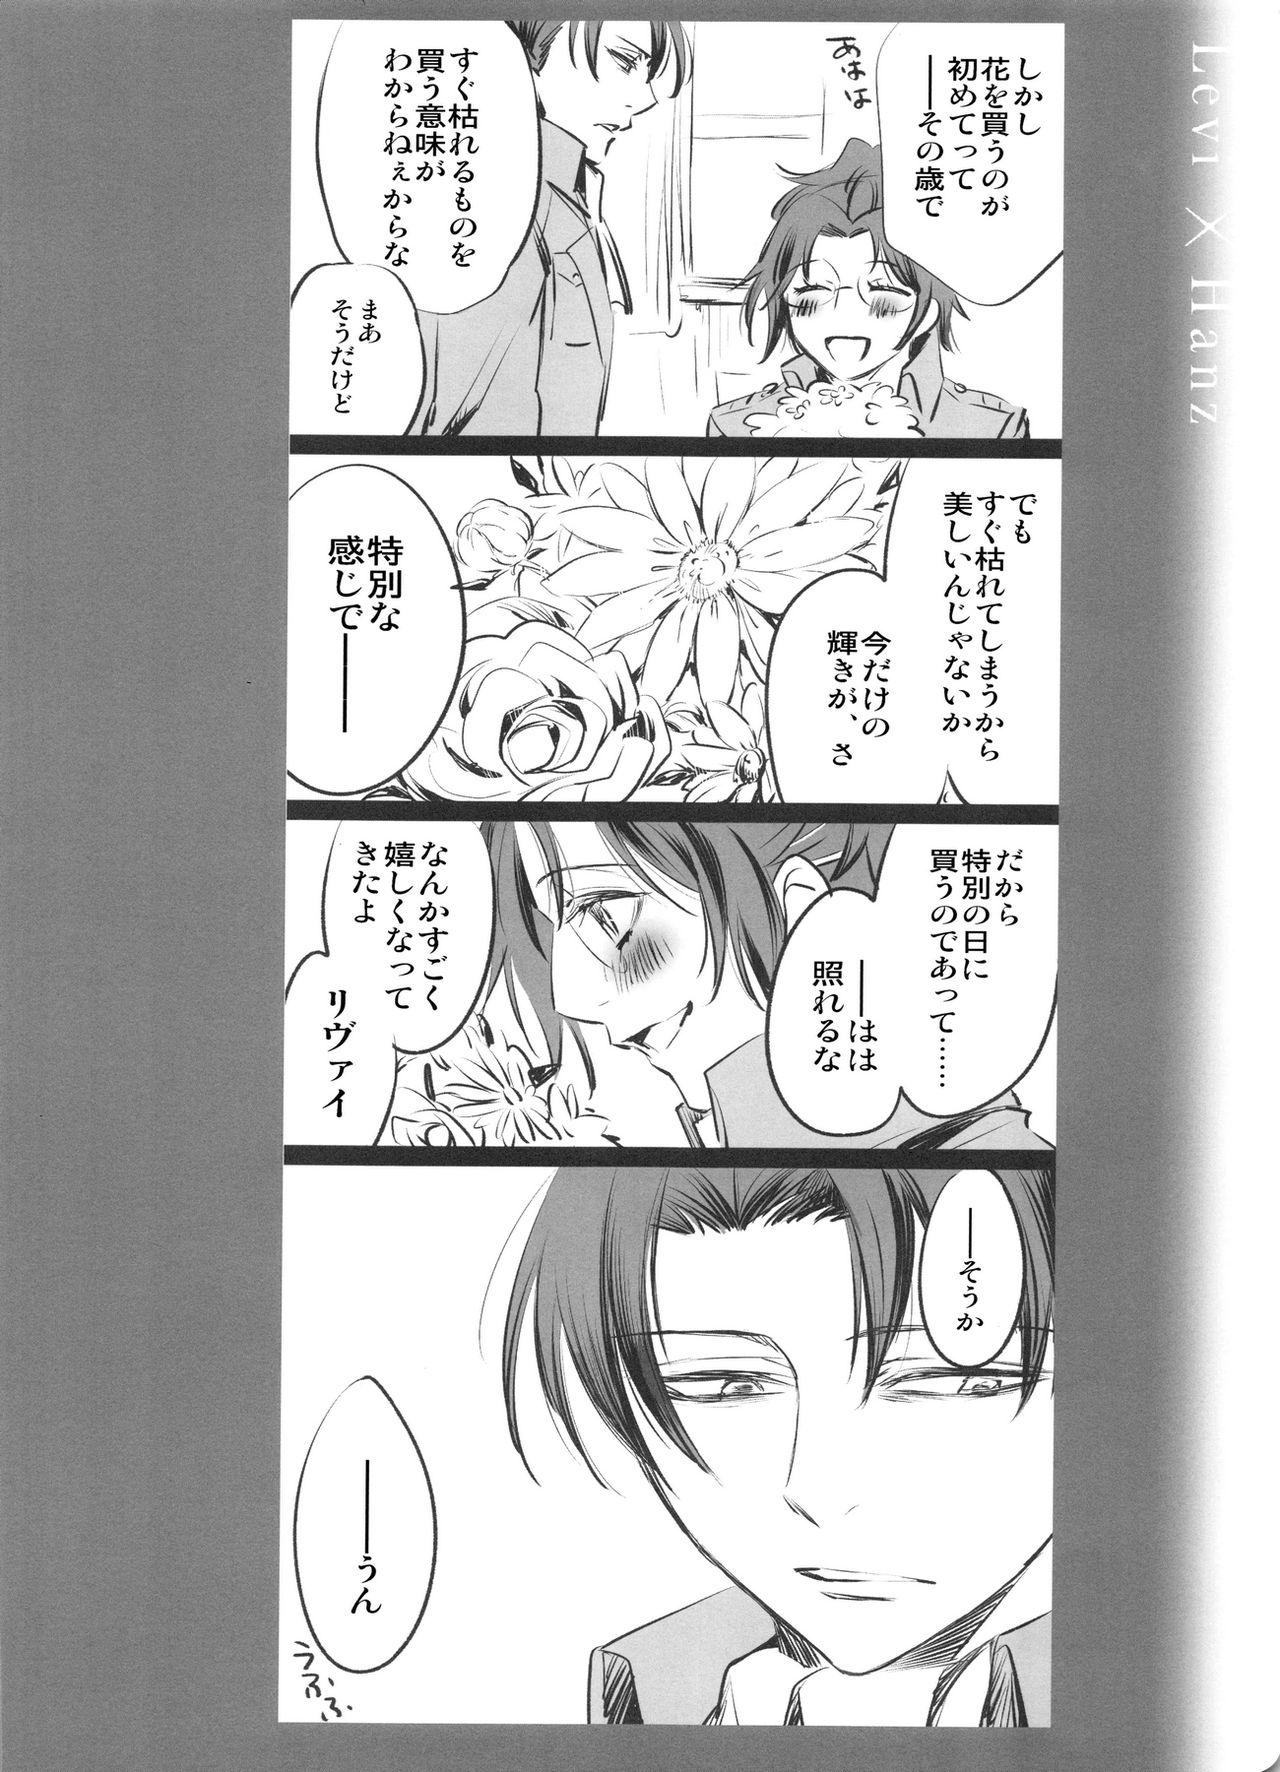 Hermana 0905 - Shingeki no kyojin Rola - Page 10